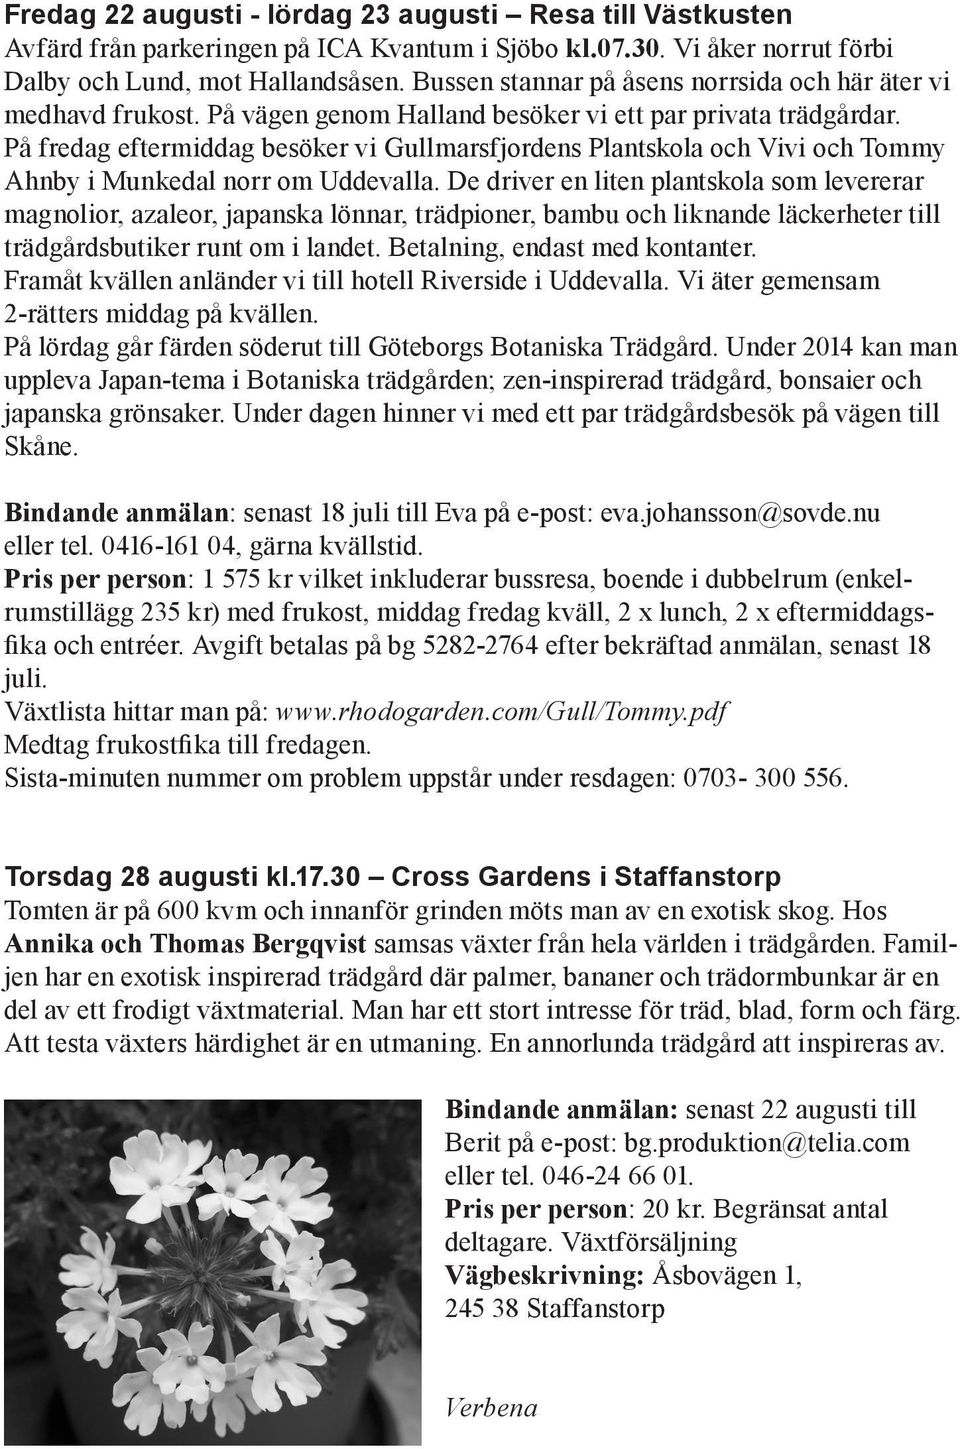 På fredag eftermiddag besöker vi Gullmarsfjordens Plantskola och Vivi och Tommy Ahnby i Munkedal norr om Uddevalla.